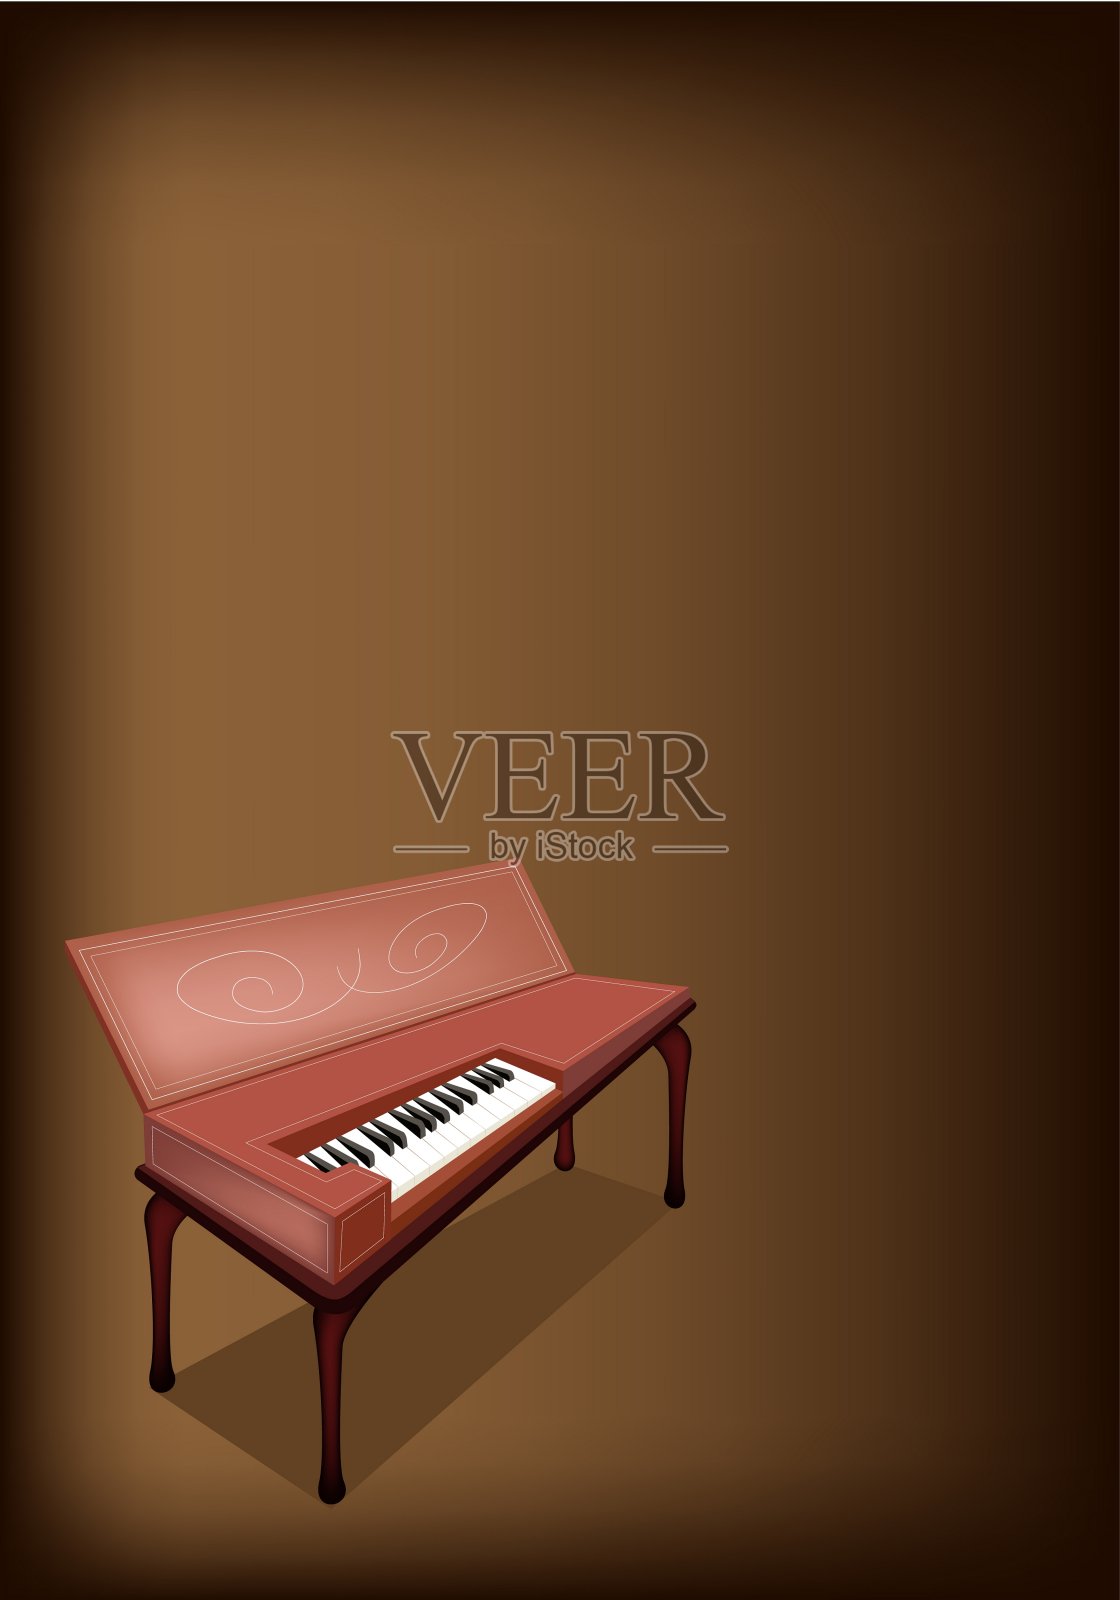 深褐色背景的复古古钢琴插画图片素材